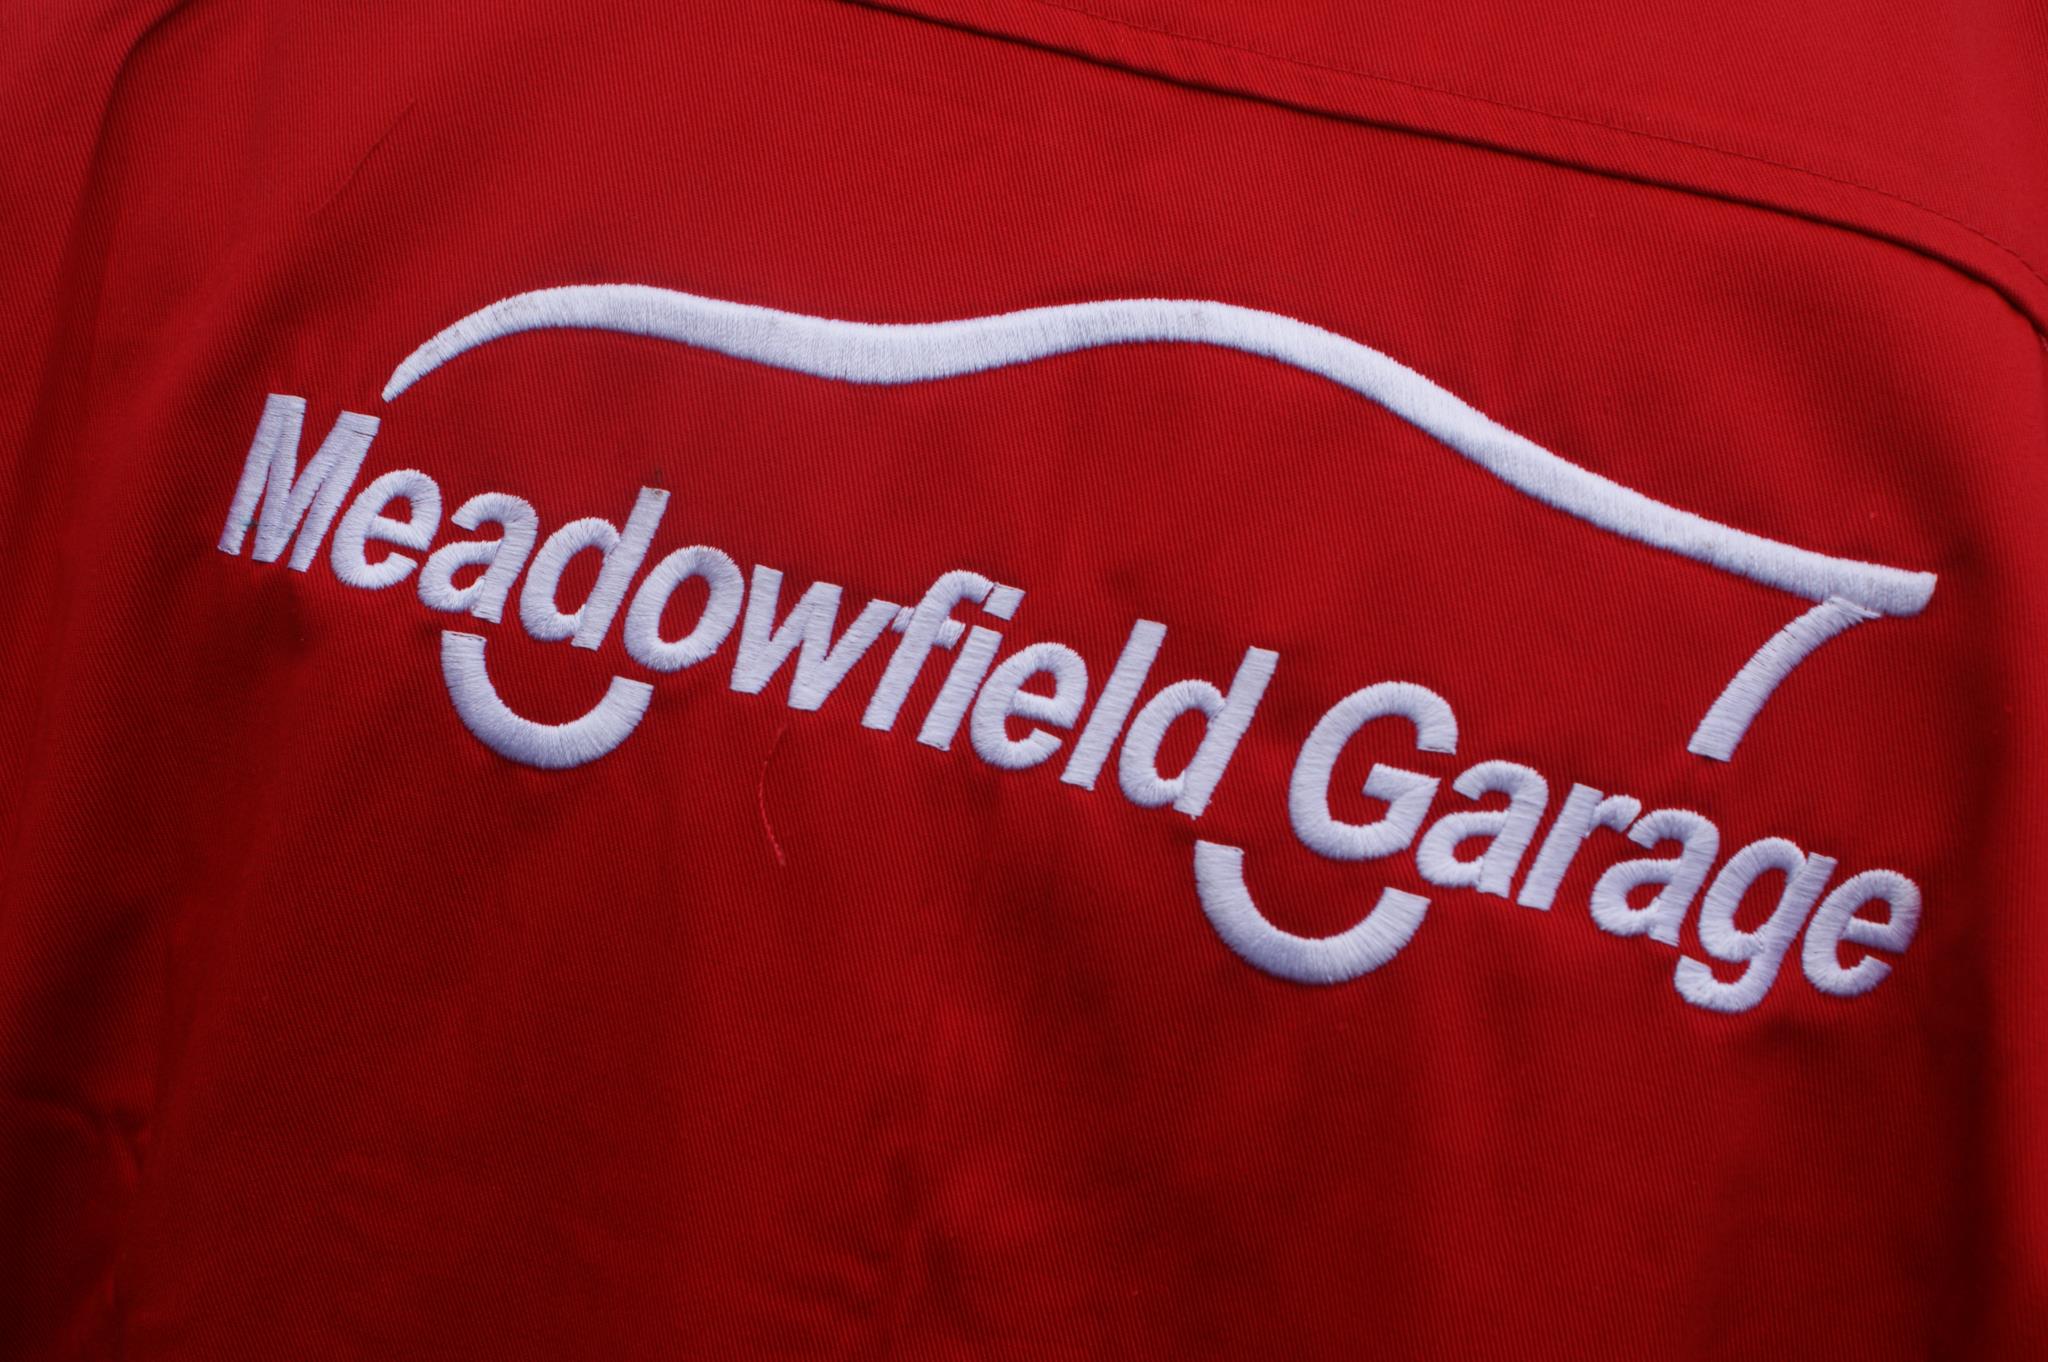 Meadowfield Garage Ltd